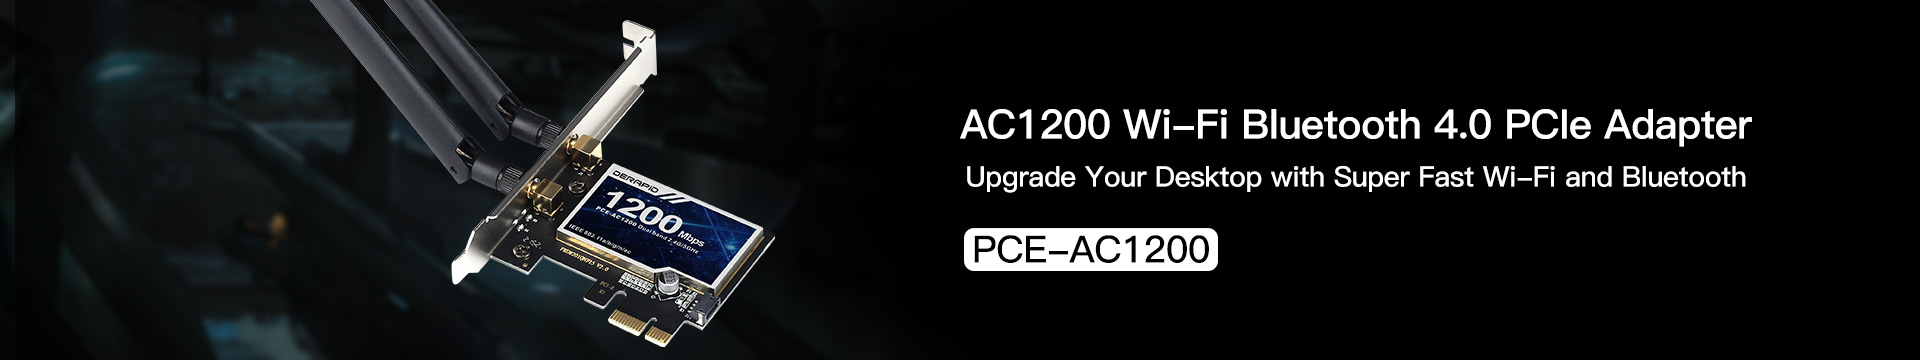 AC1200 PCIE WiFi Card